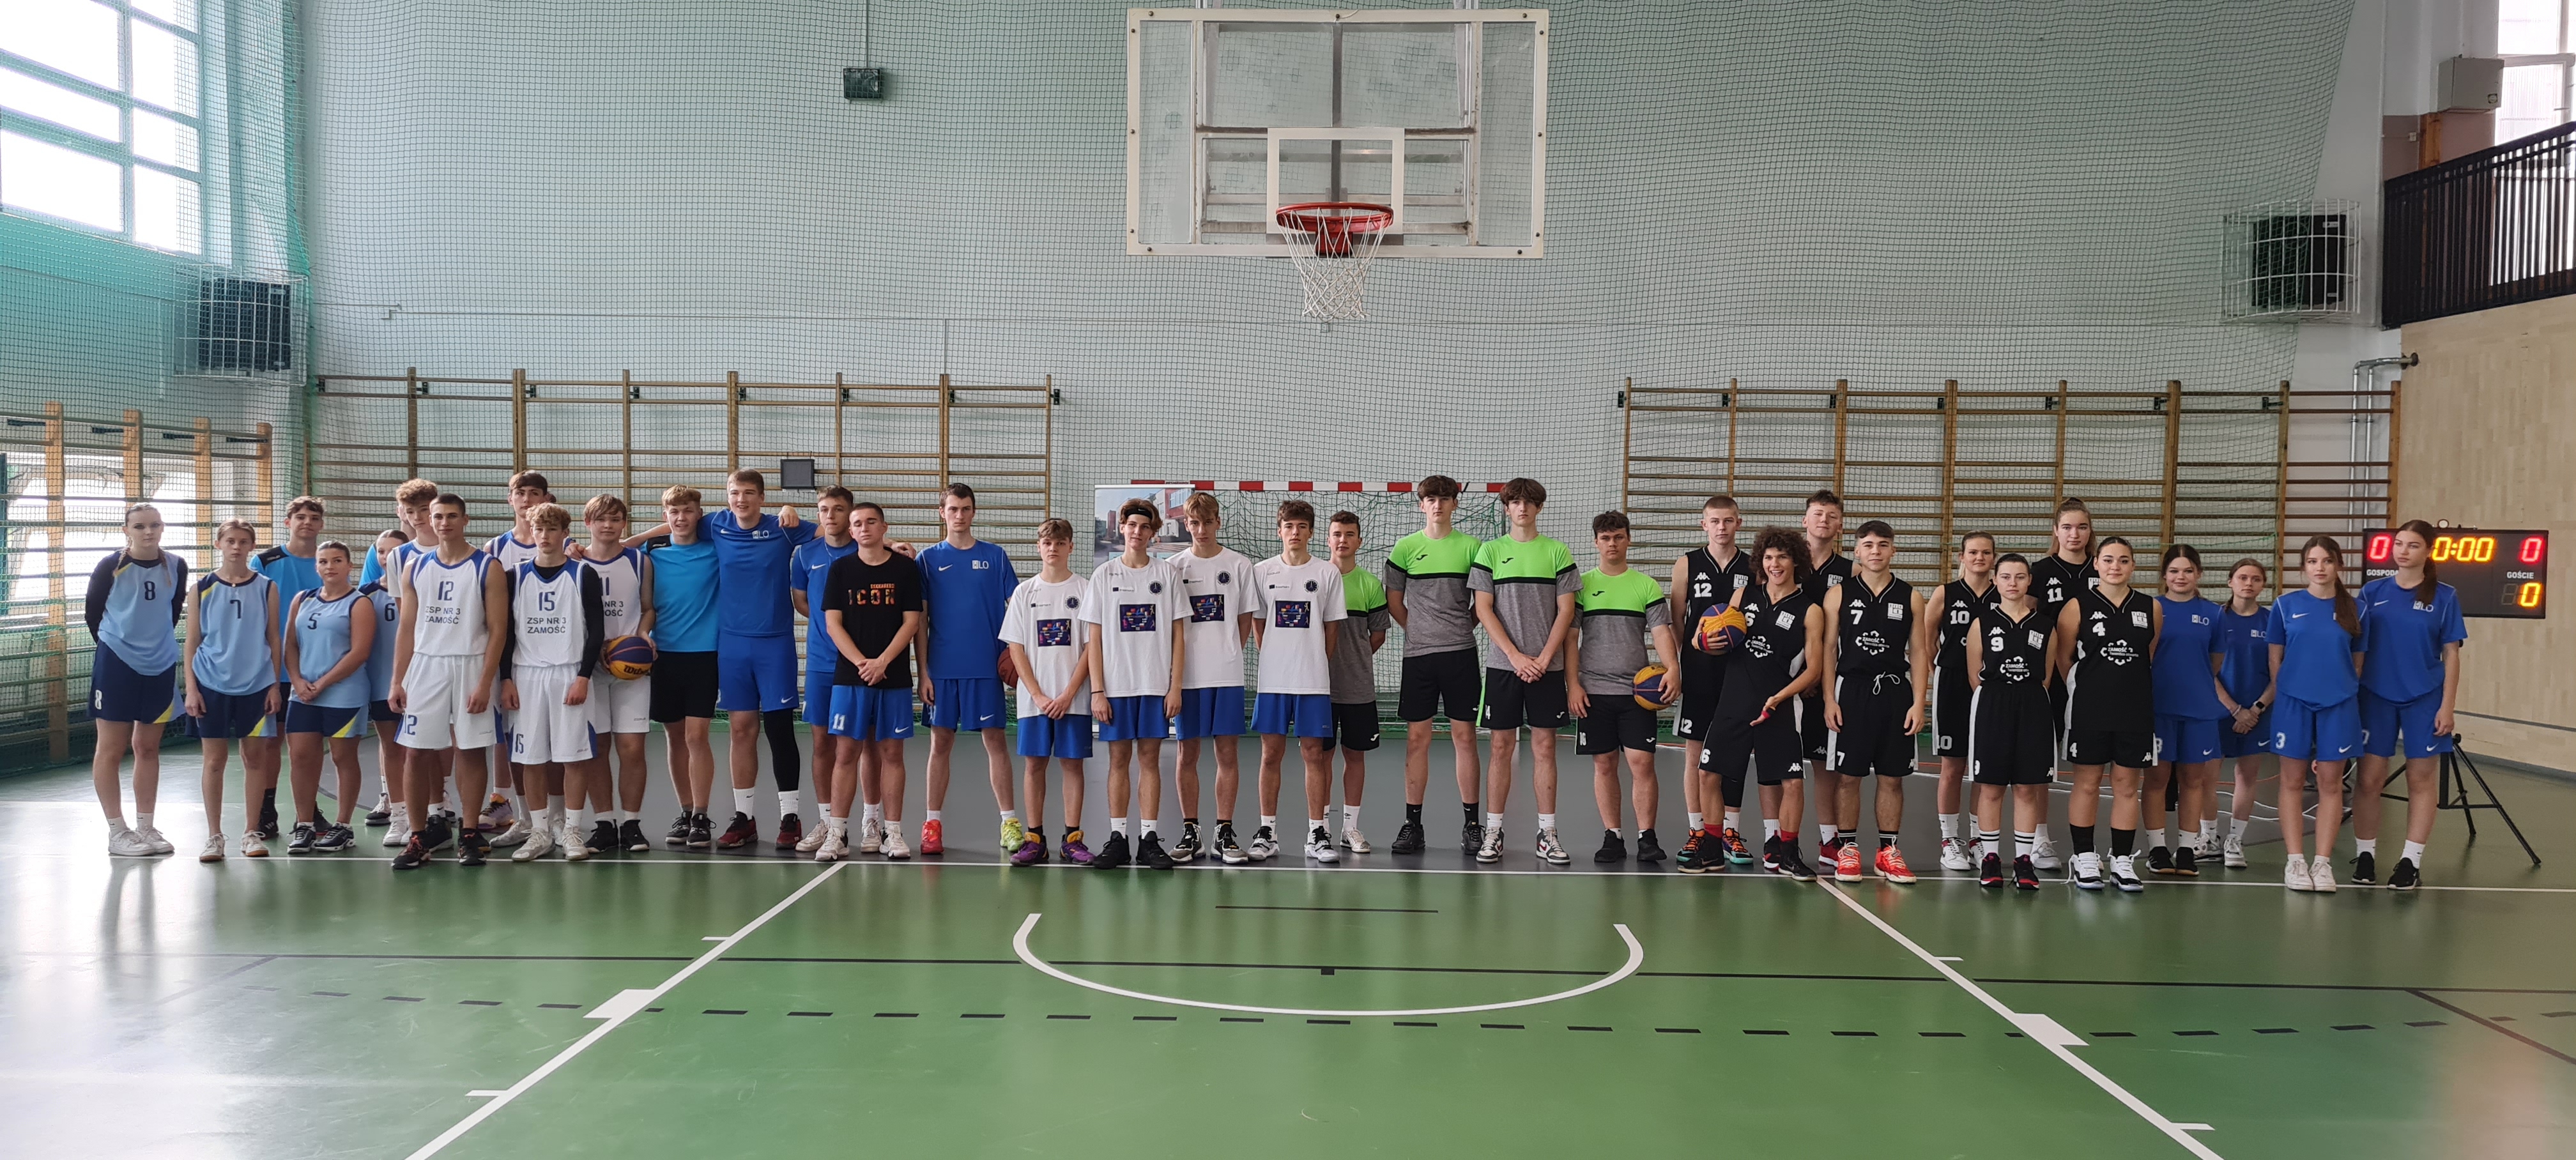 Podsumowanie Zamojskiej Ligi Koszykówki 3x3 dla uczniów szkół ponadpodstawowych...